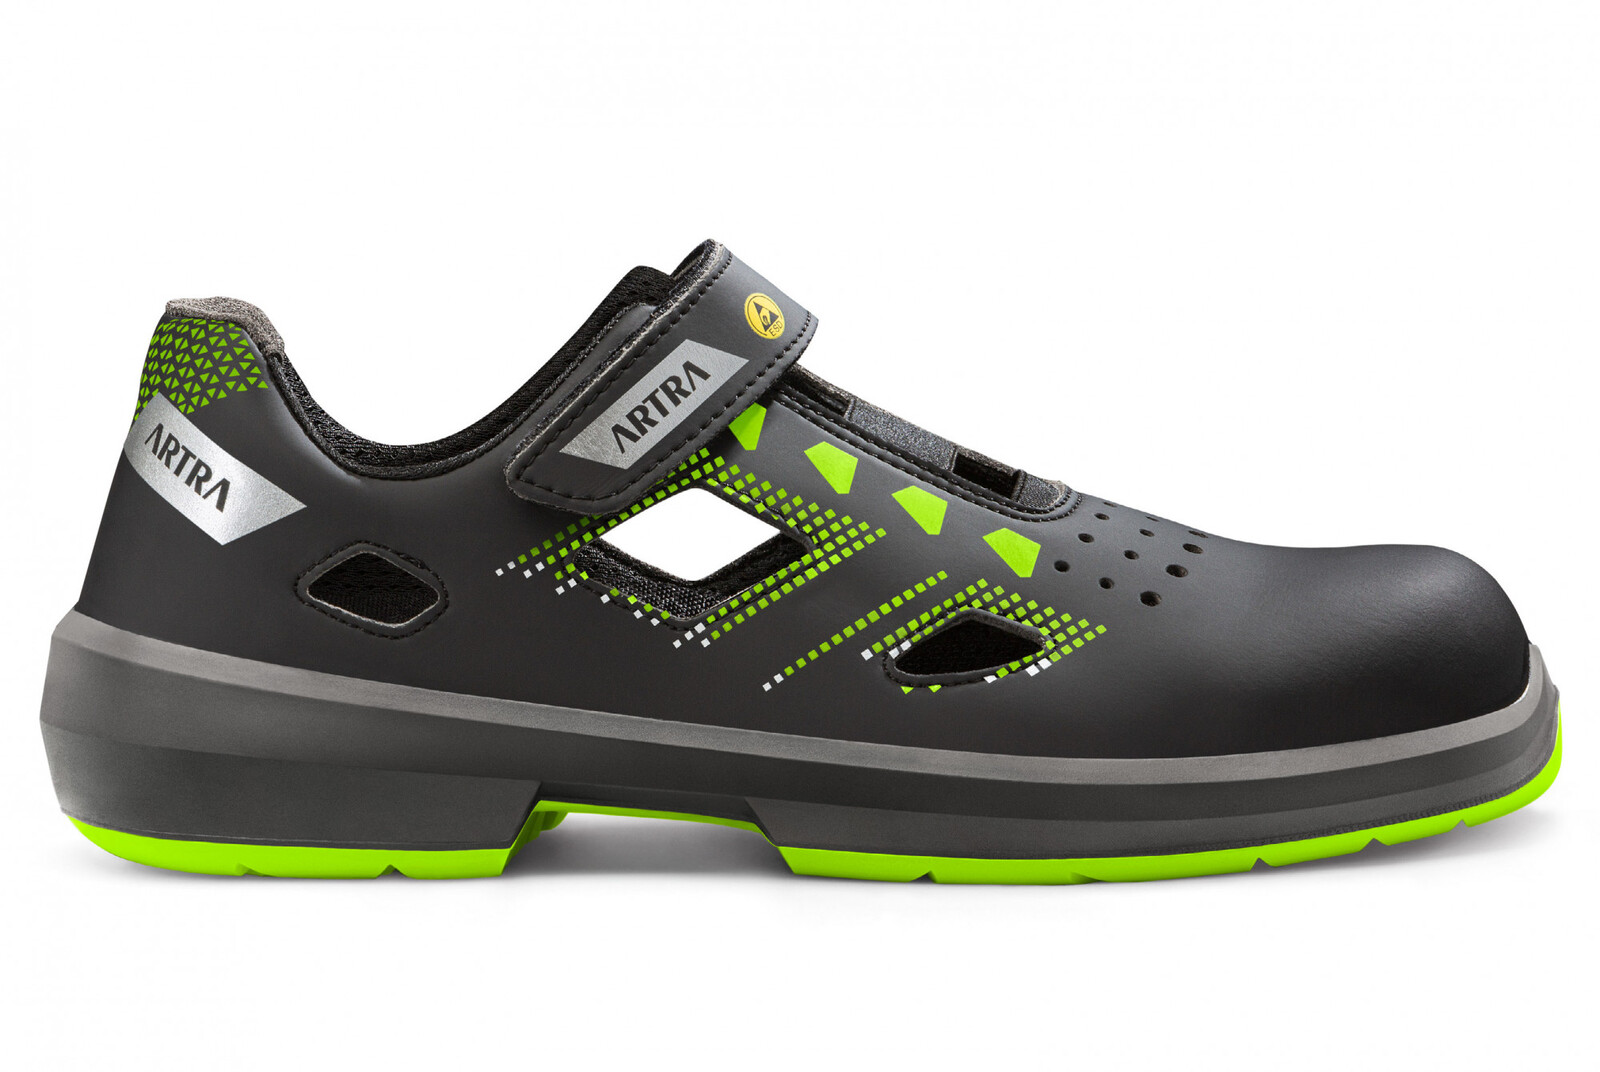 Bezpečnostné sandále Artra Arzo 805 678080 S1 SRC ESD MF - veľkosť: 36, farba: čierna/zelená